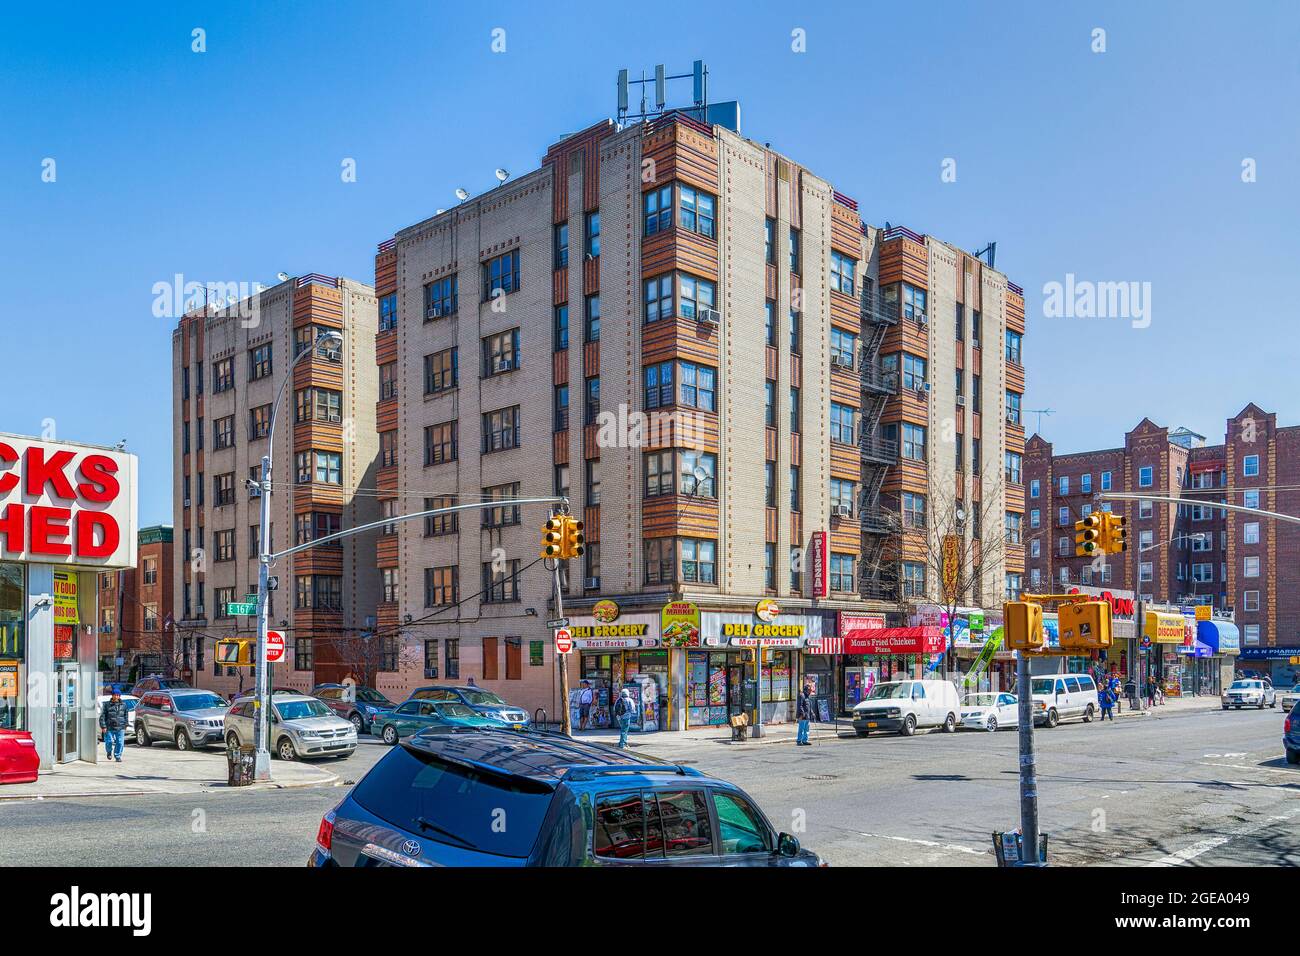 Il 1212 Grant Avenue è un edificio in stile Art Déco situato nel Bronx. Foto Stock